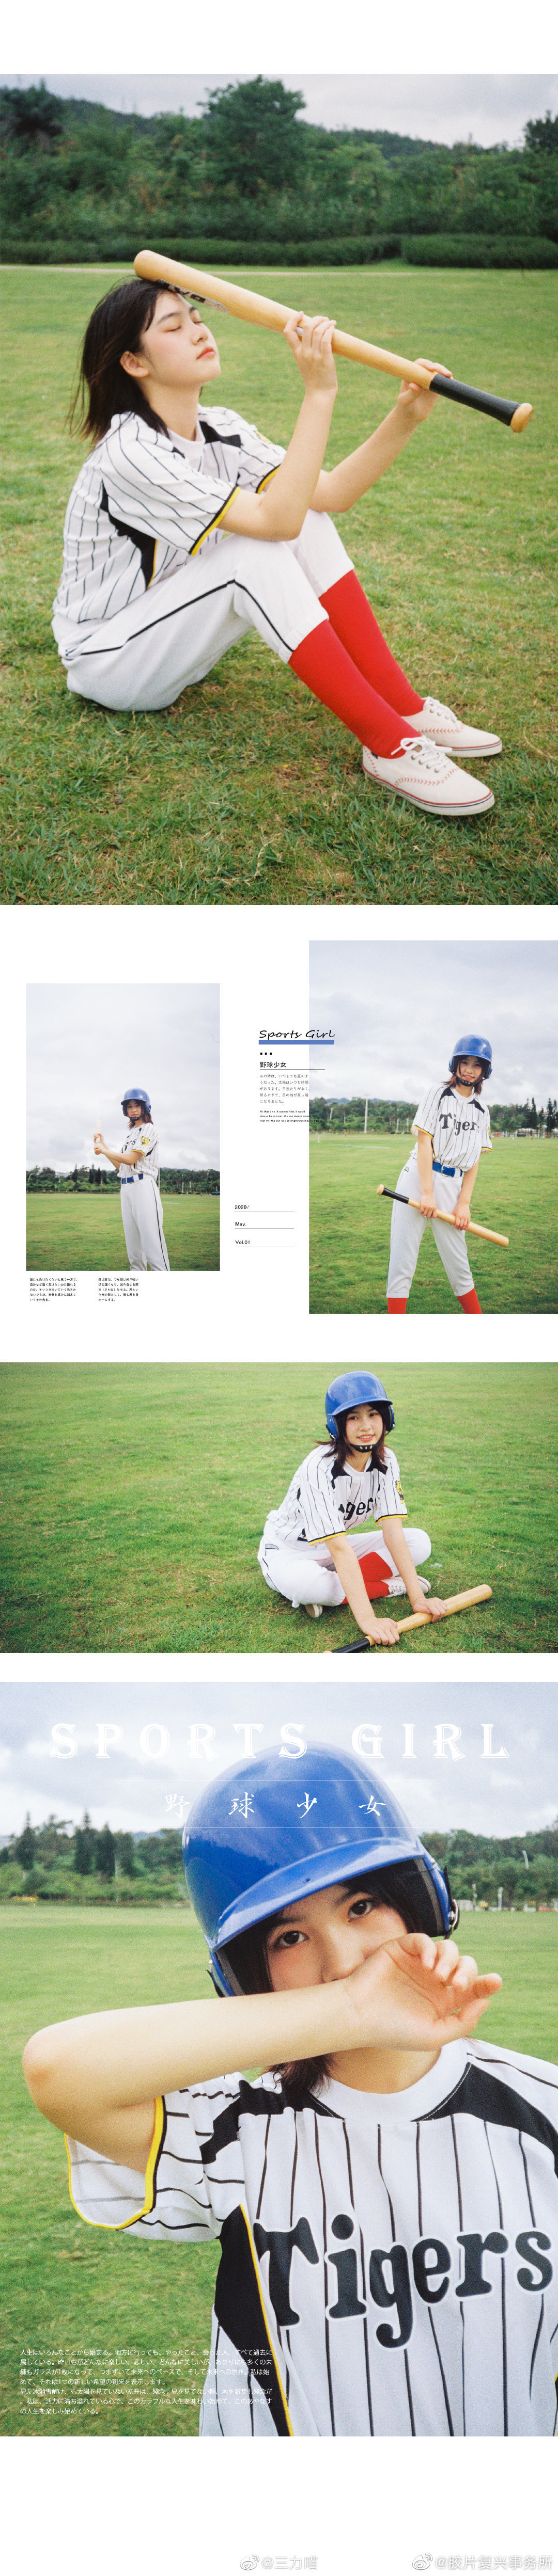 少女 野球